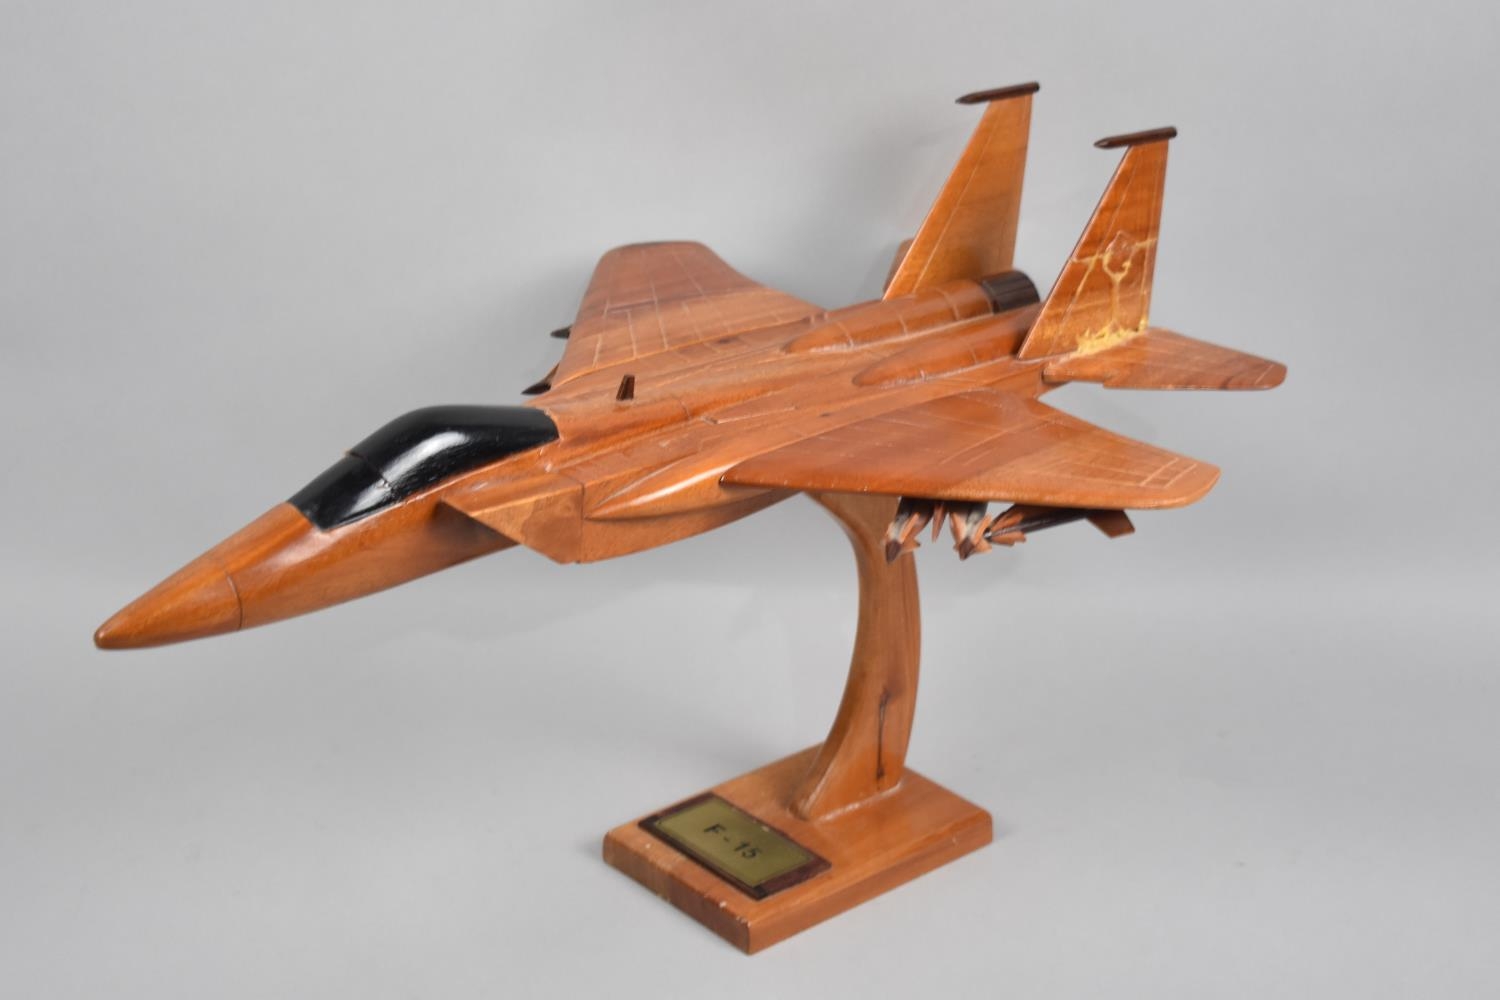 A Modern Wooden Model of a F-15 Fighter Jet, Rear Fin Glued, 44cm Long